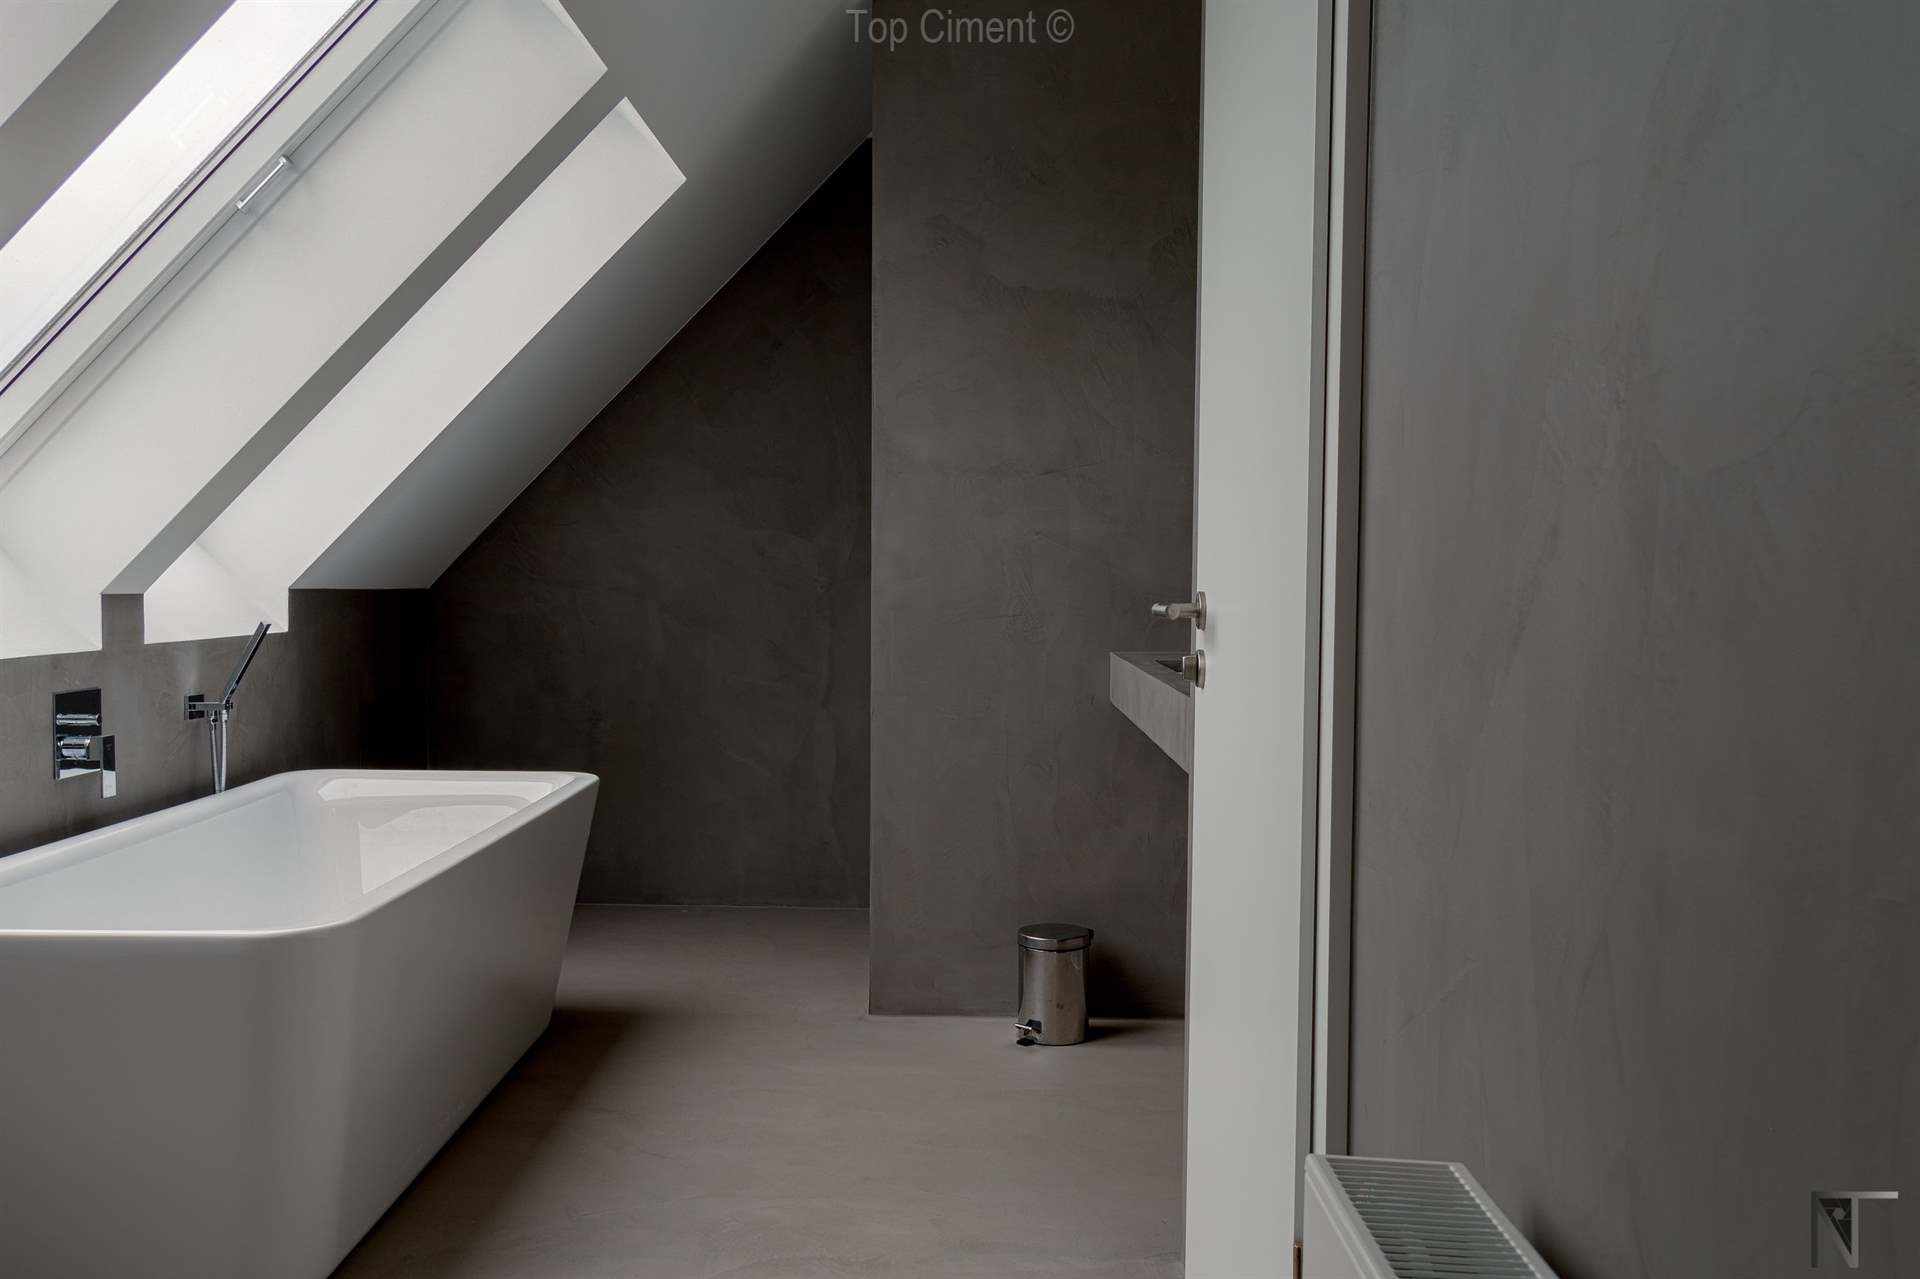 Ванная комната с кафельной плиткой, отремонтированная с использованием микроцемента Microfino Topciment